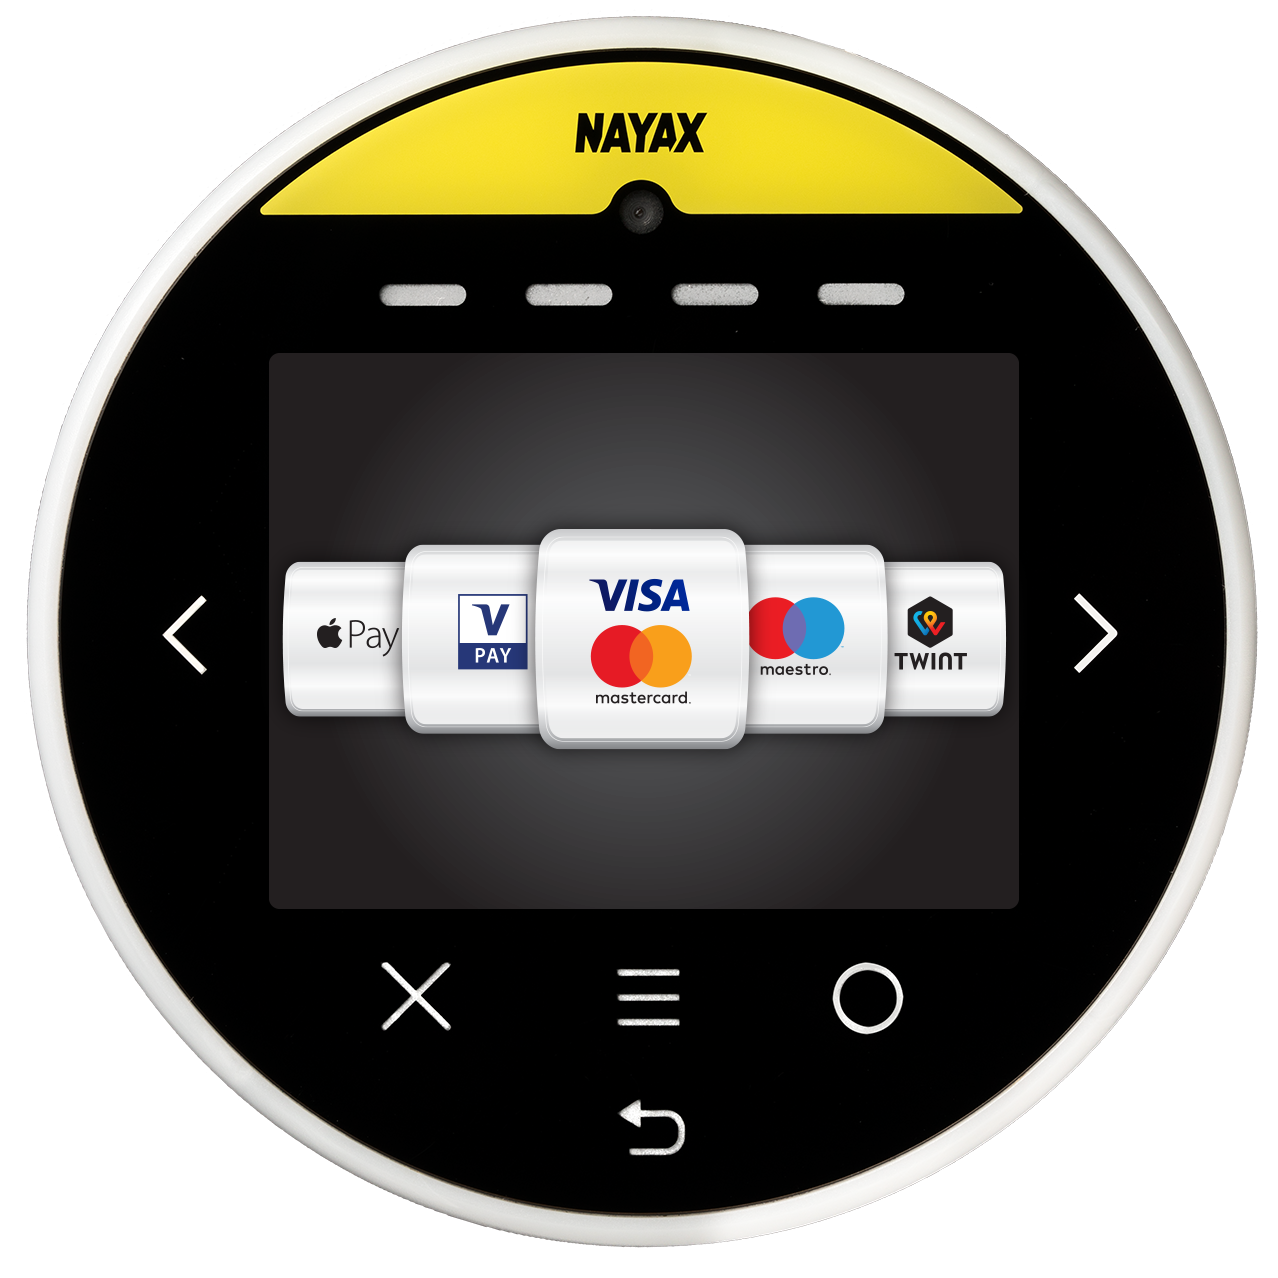 Nayax Onyx 4G Cashless payment System!